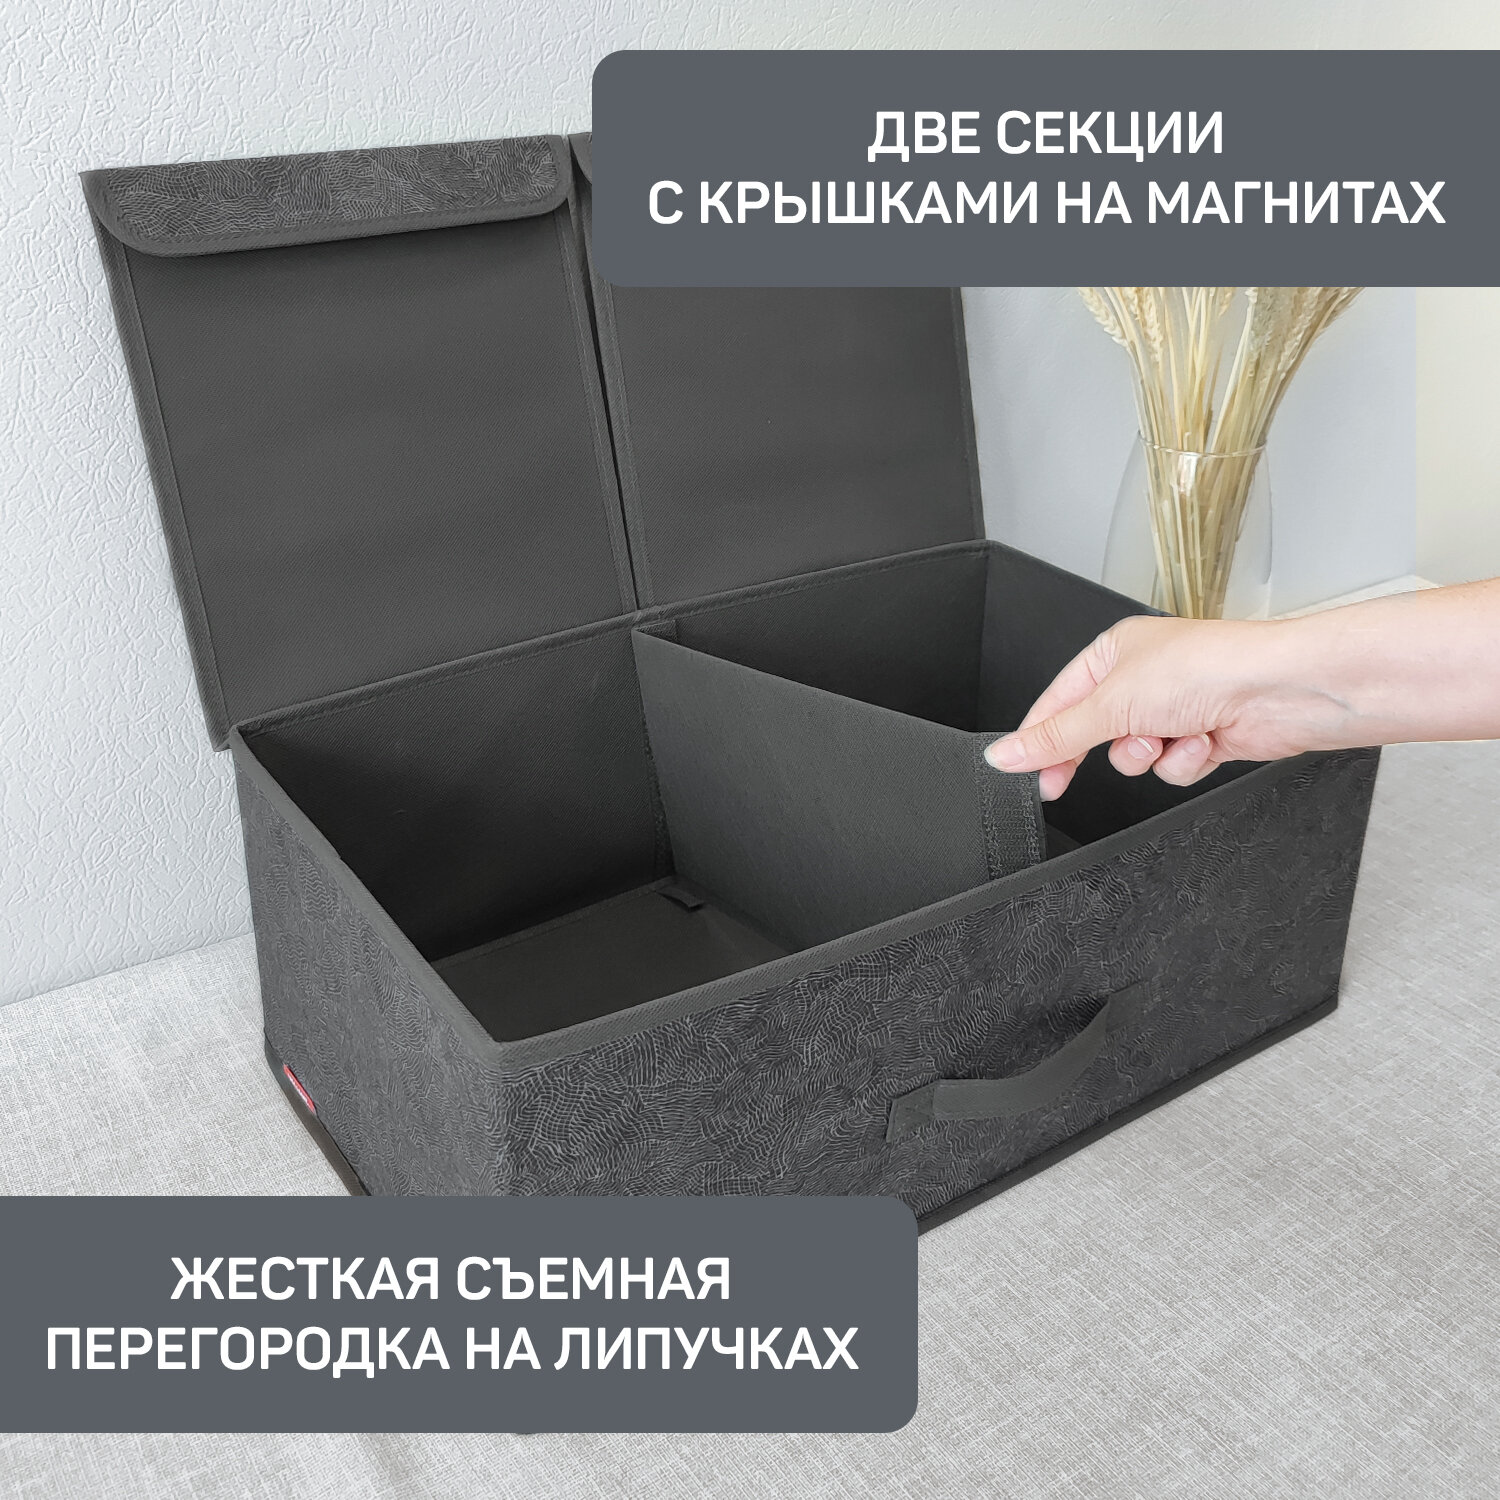 Коробка для хранения вещей с крышкой, короб для хранения стеллажный, корзина, ящик с двумя отделениями, 50*30*20 см, MONET NIGHT